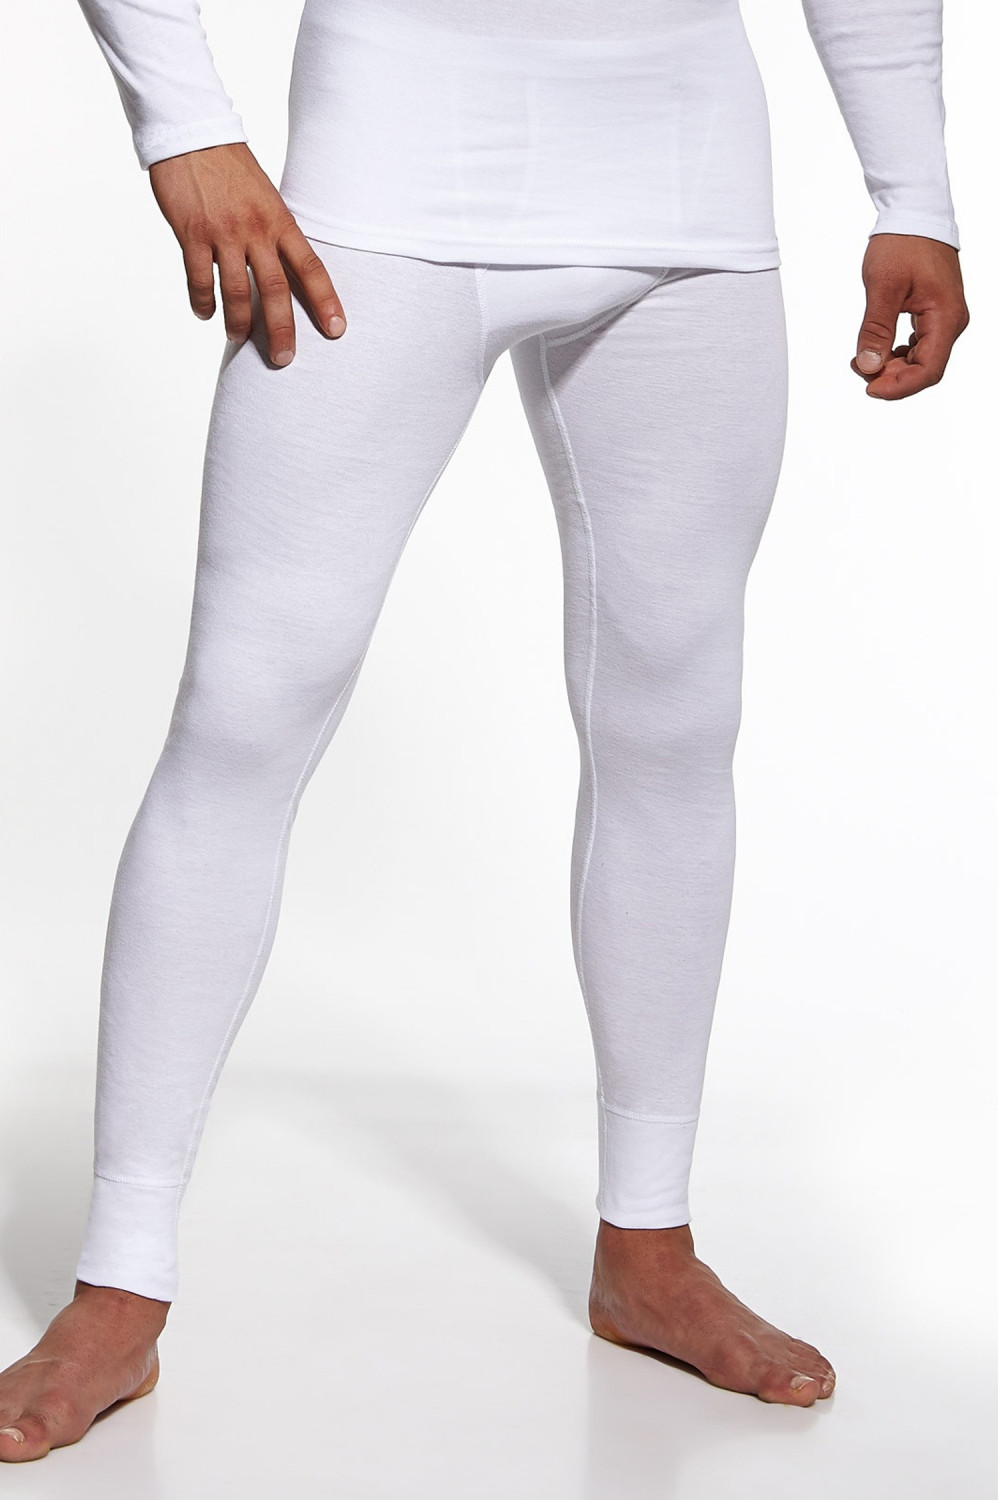 Pánské podvlékací kalhoty Authentic white - CORNETTE Bílá XXL